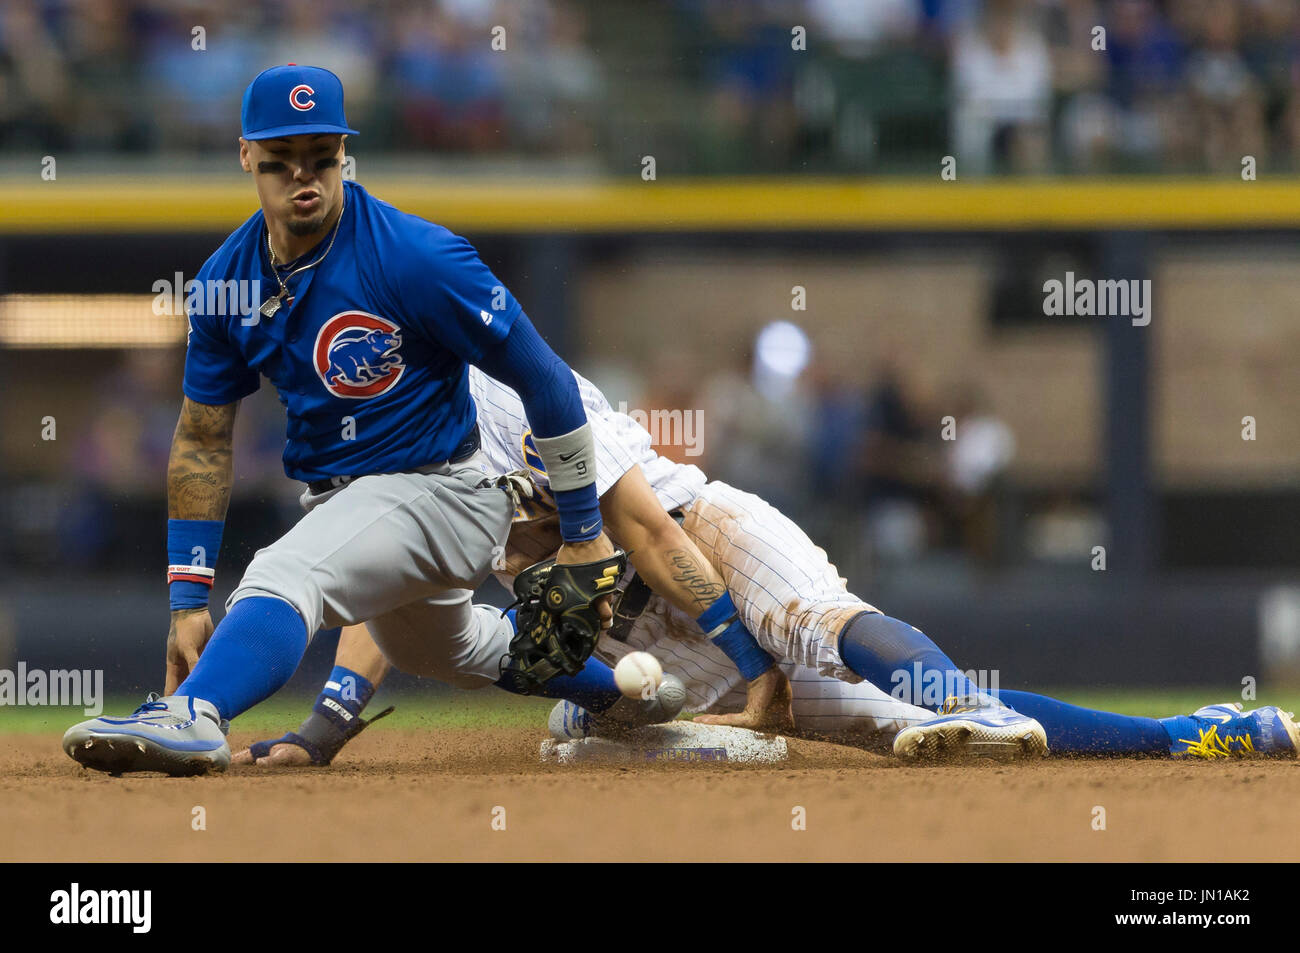 Javier Báez - Chicago Cubs #9  Chicago cubs wallpaper, Mlb